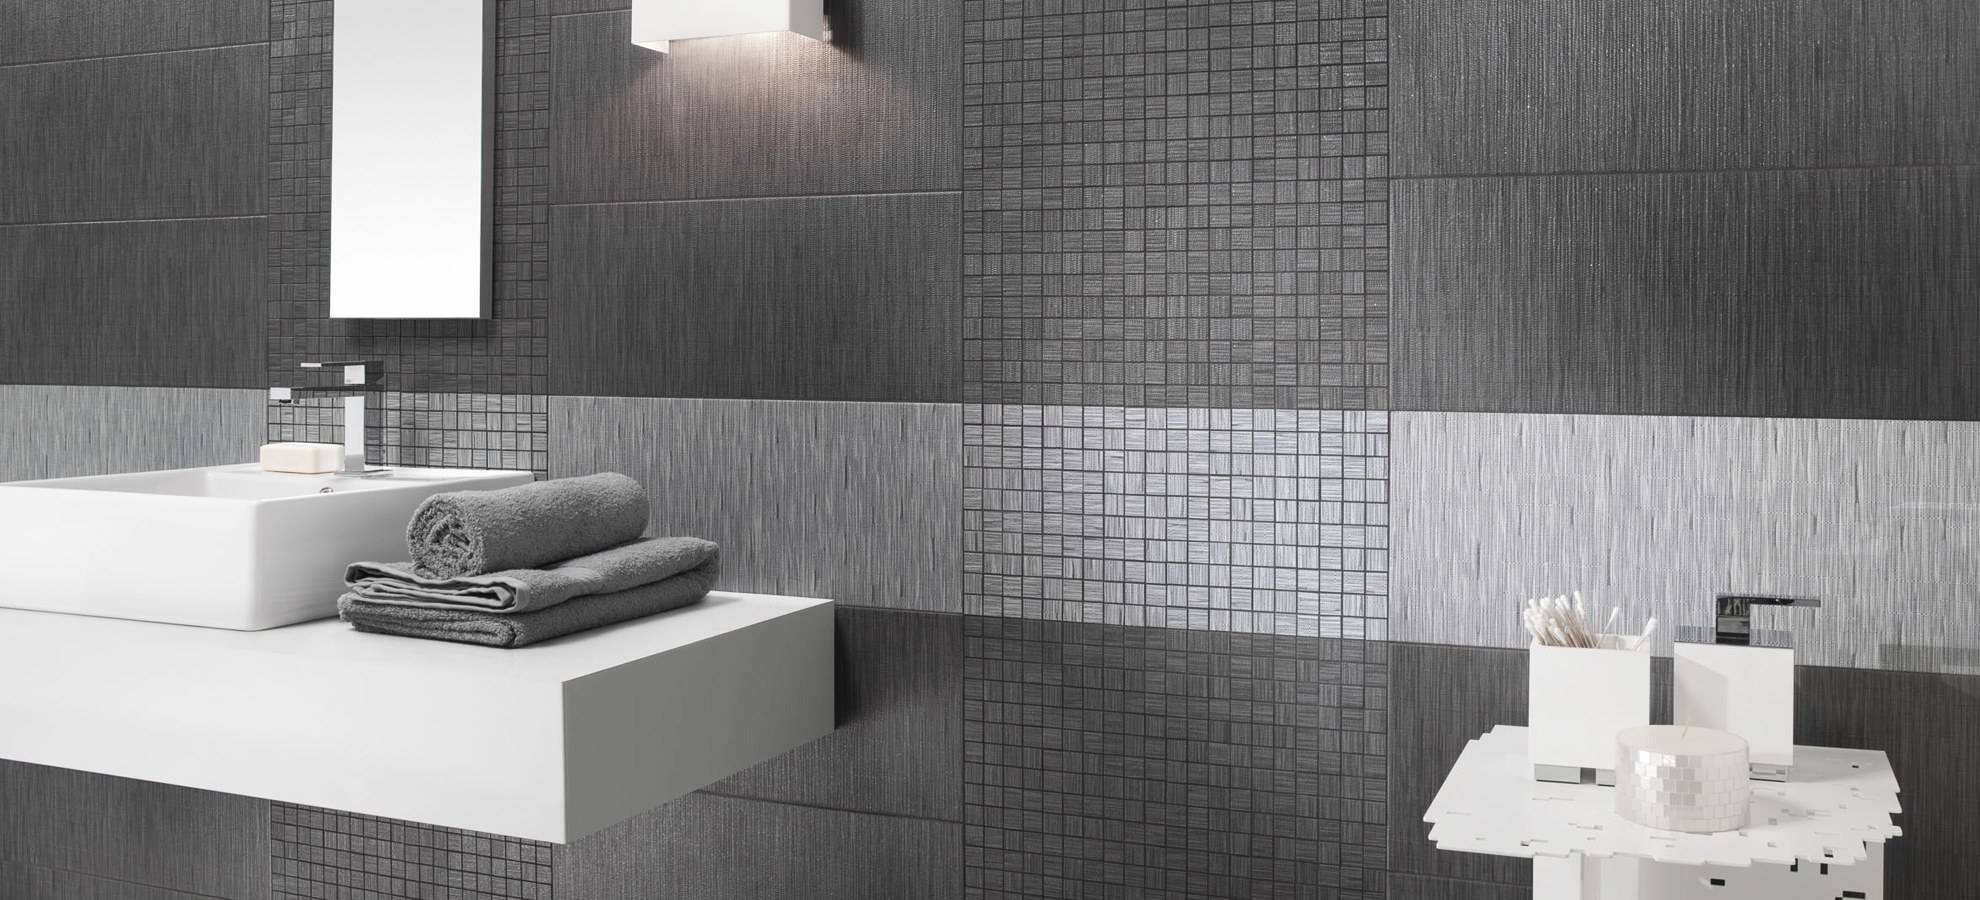 Серая ванная комната - дизайн с фото: с деревом, с яркими акцентами, бело-серая ванная, минимализм, 3,5 кв, 5 кв, темно-серая